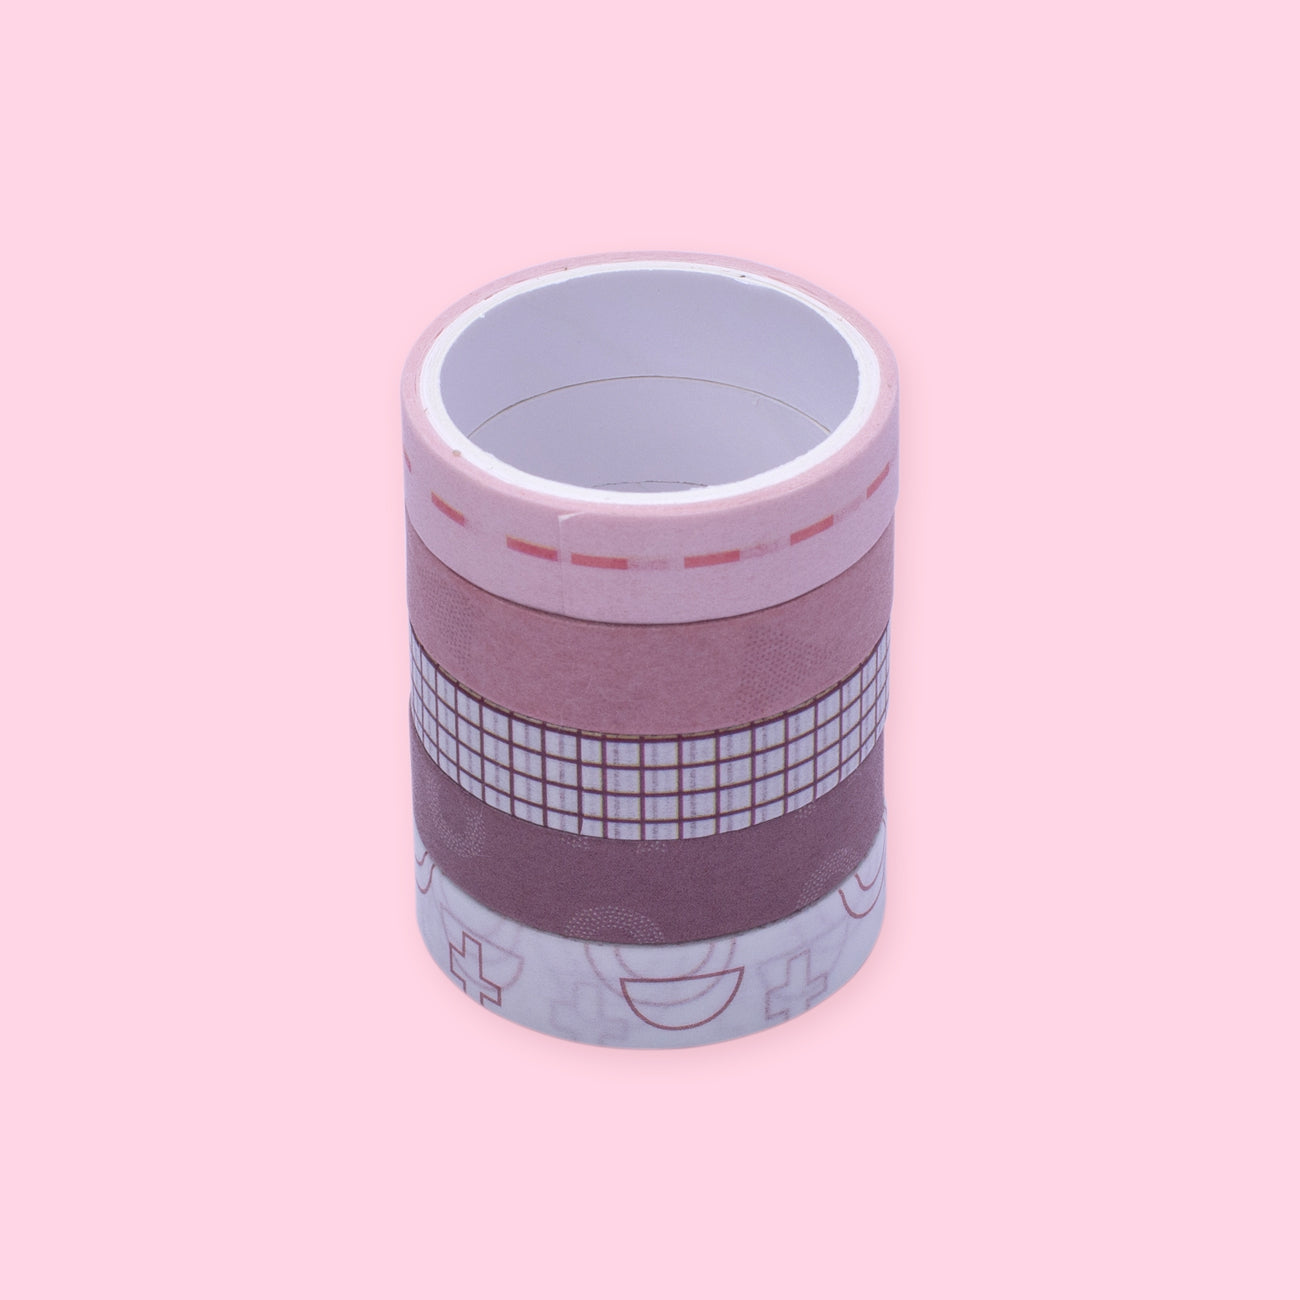 Geometric Pattern Washi Tape - Set of 5 - Pink and White